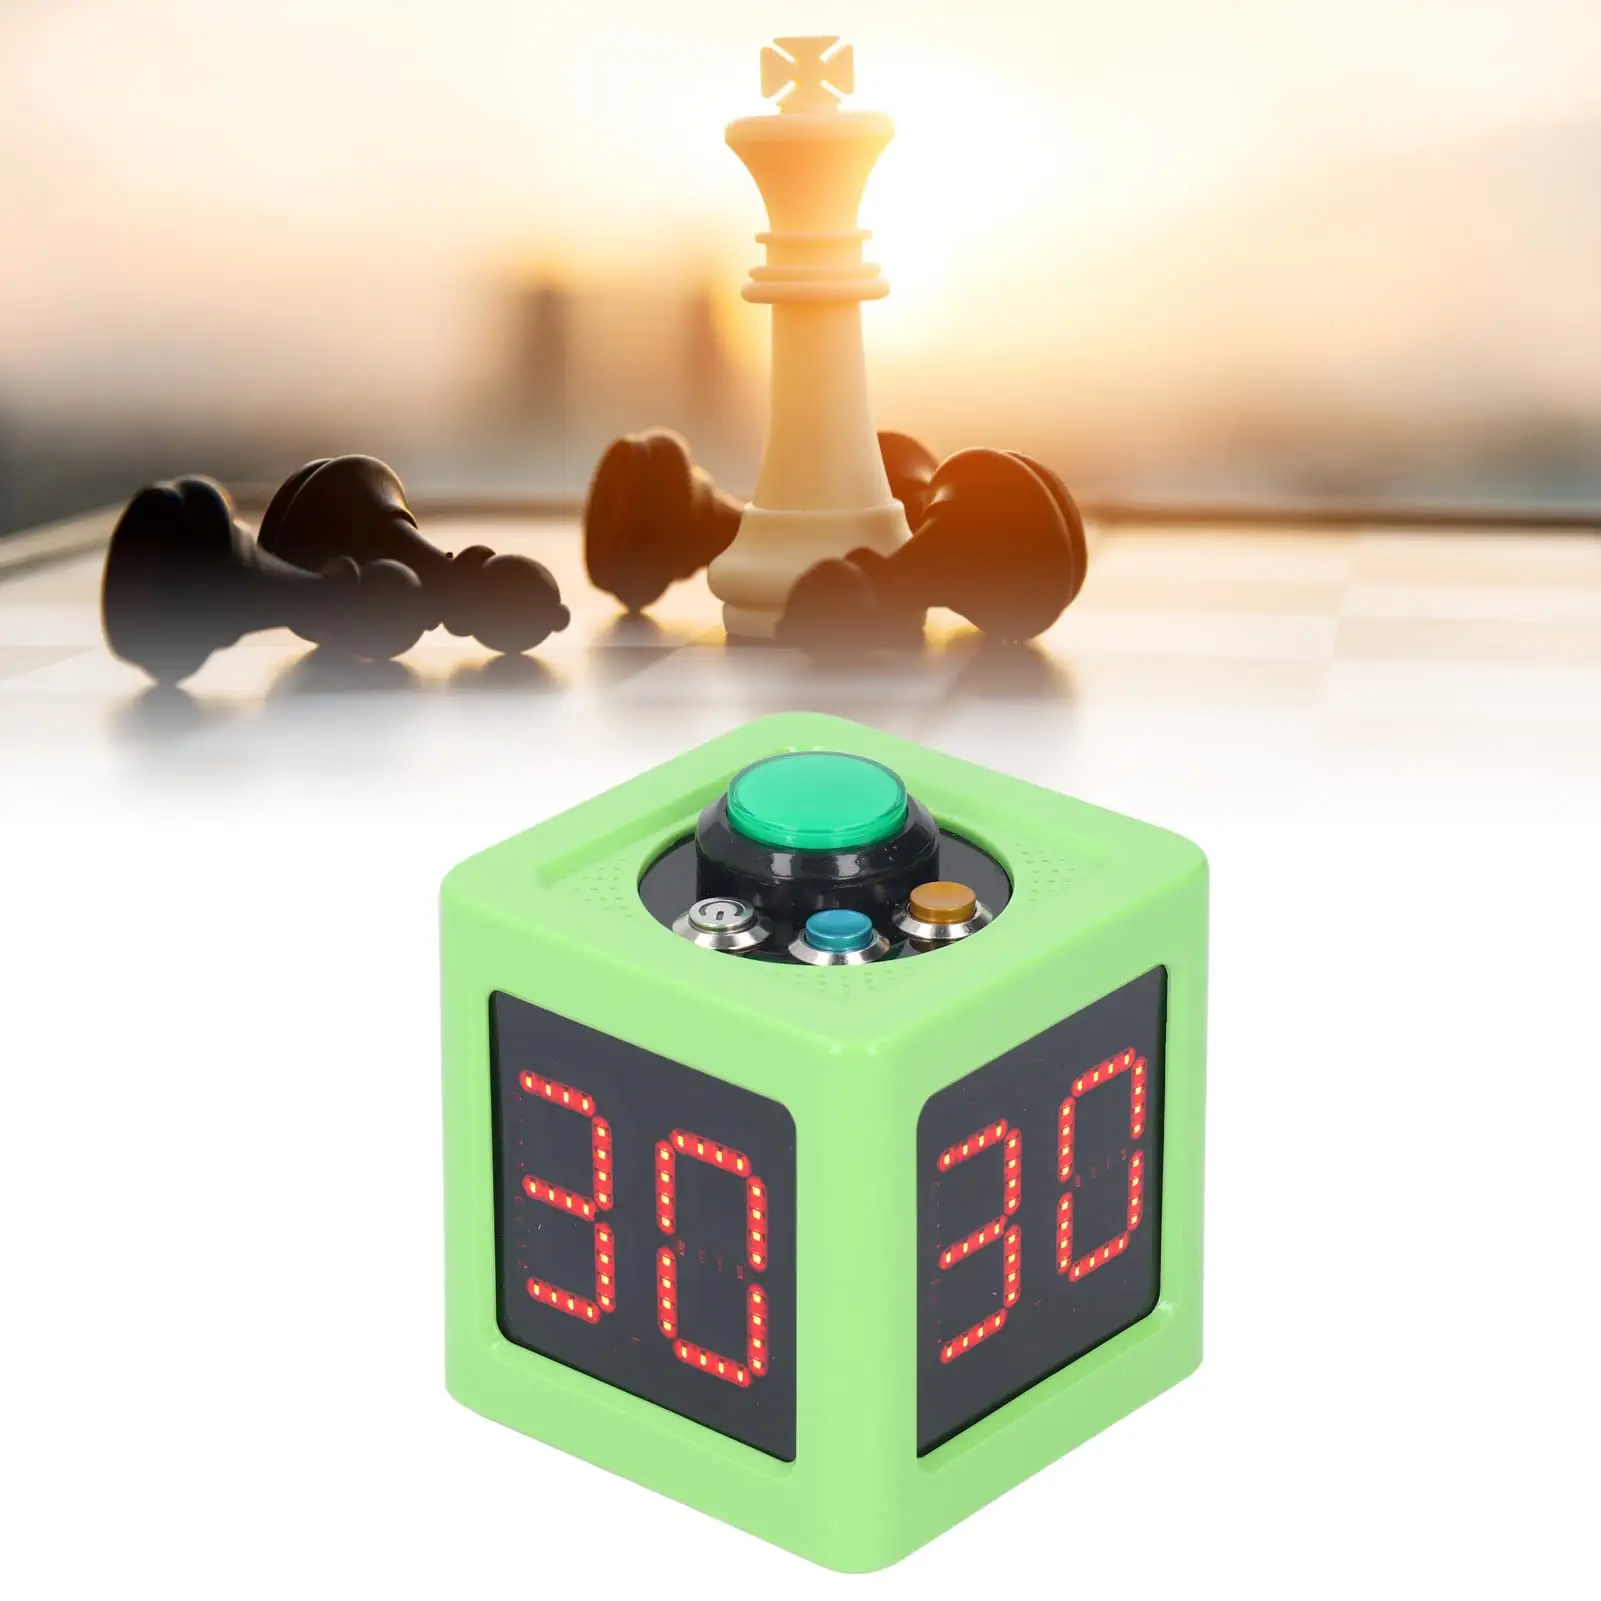 YIZHI LEDデジタルポーカーチェスタイマーショットクロック、プロのポーカーカジノチェストーナメントの0〜99秒のカウントダウン